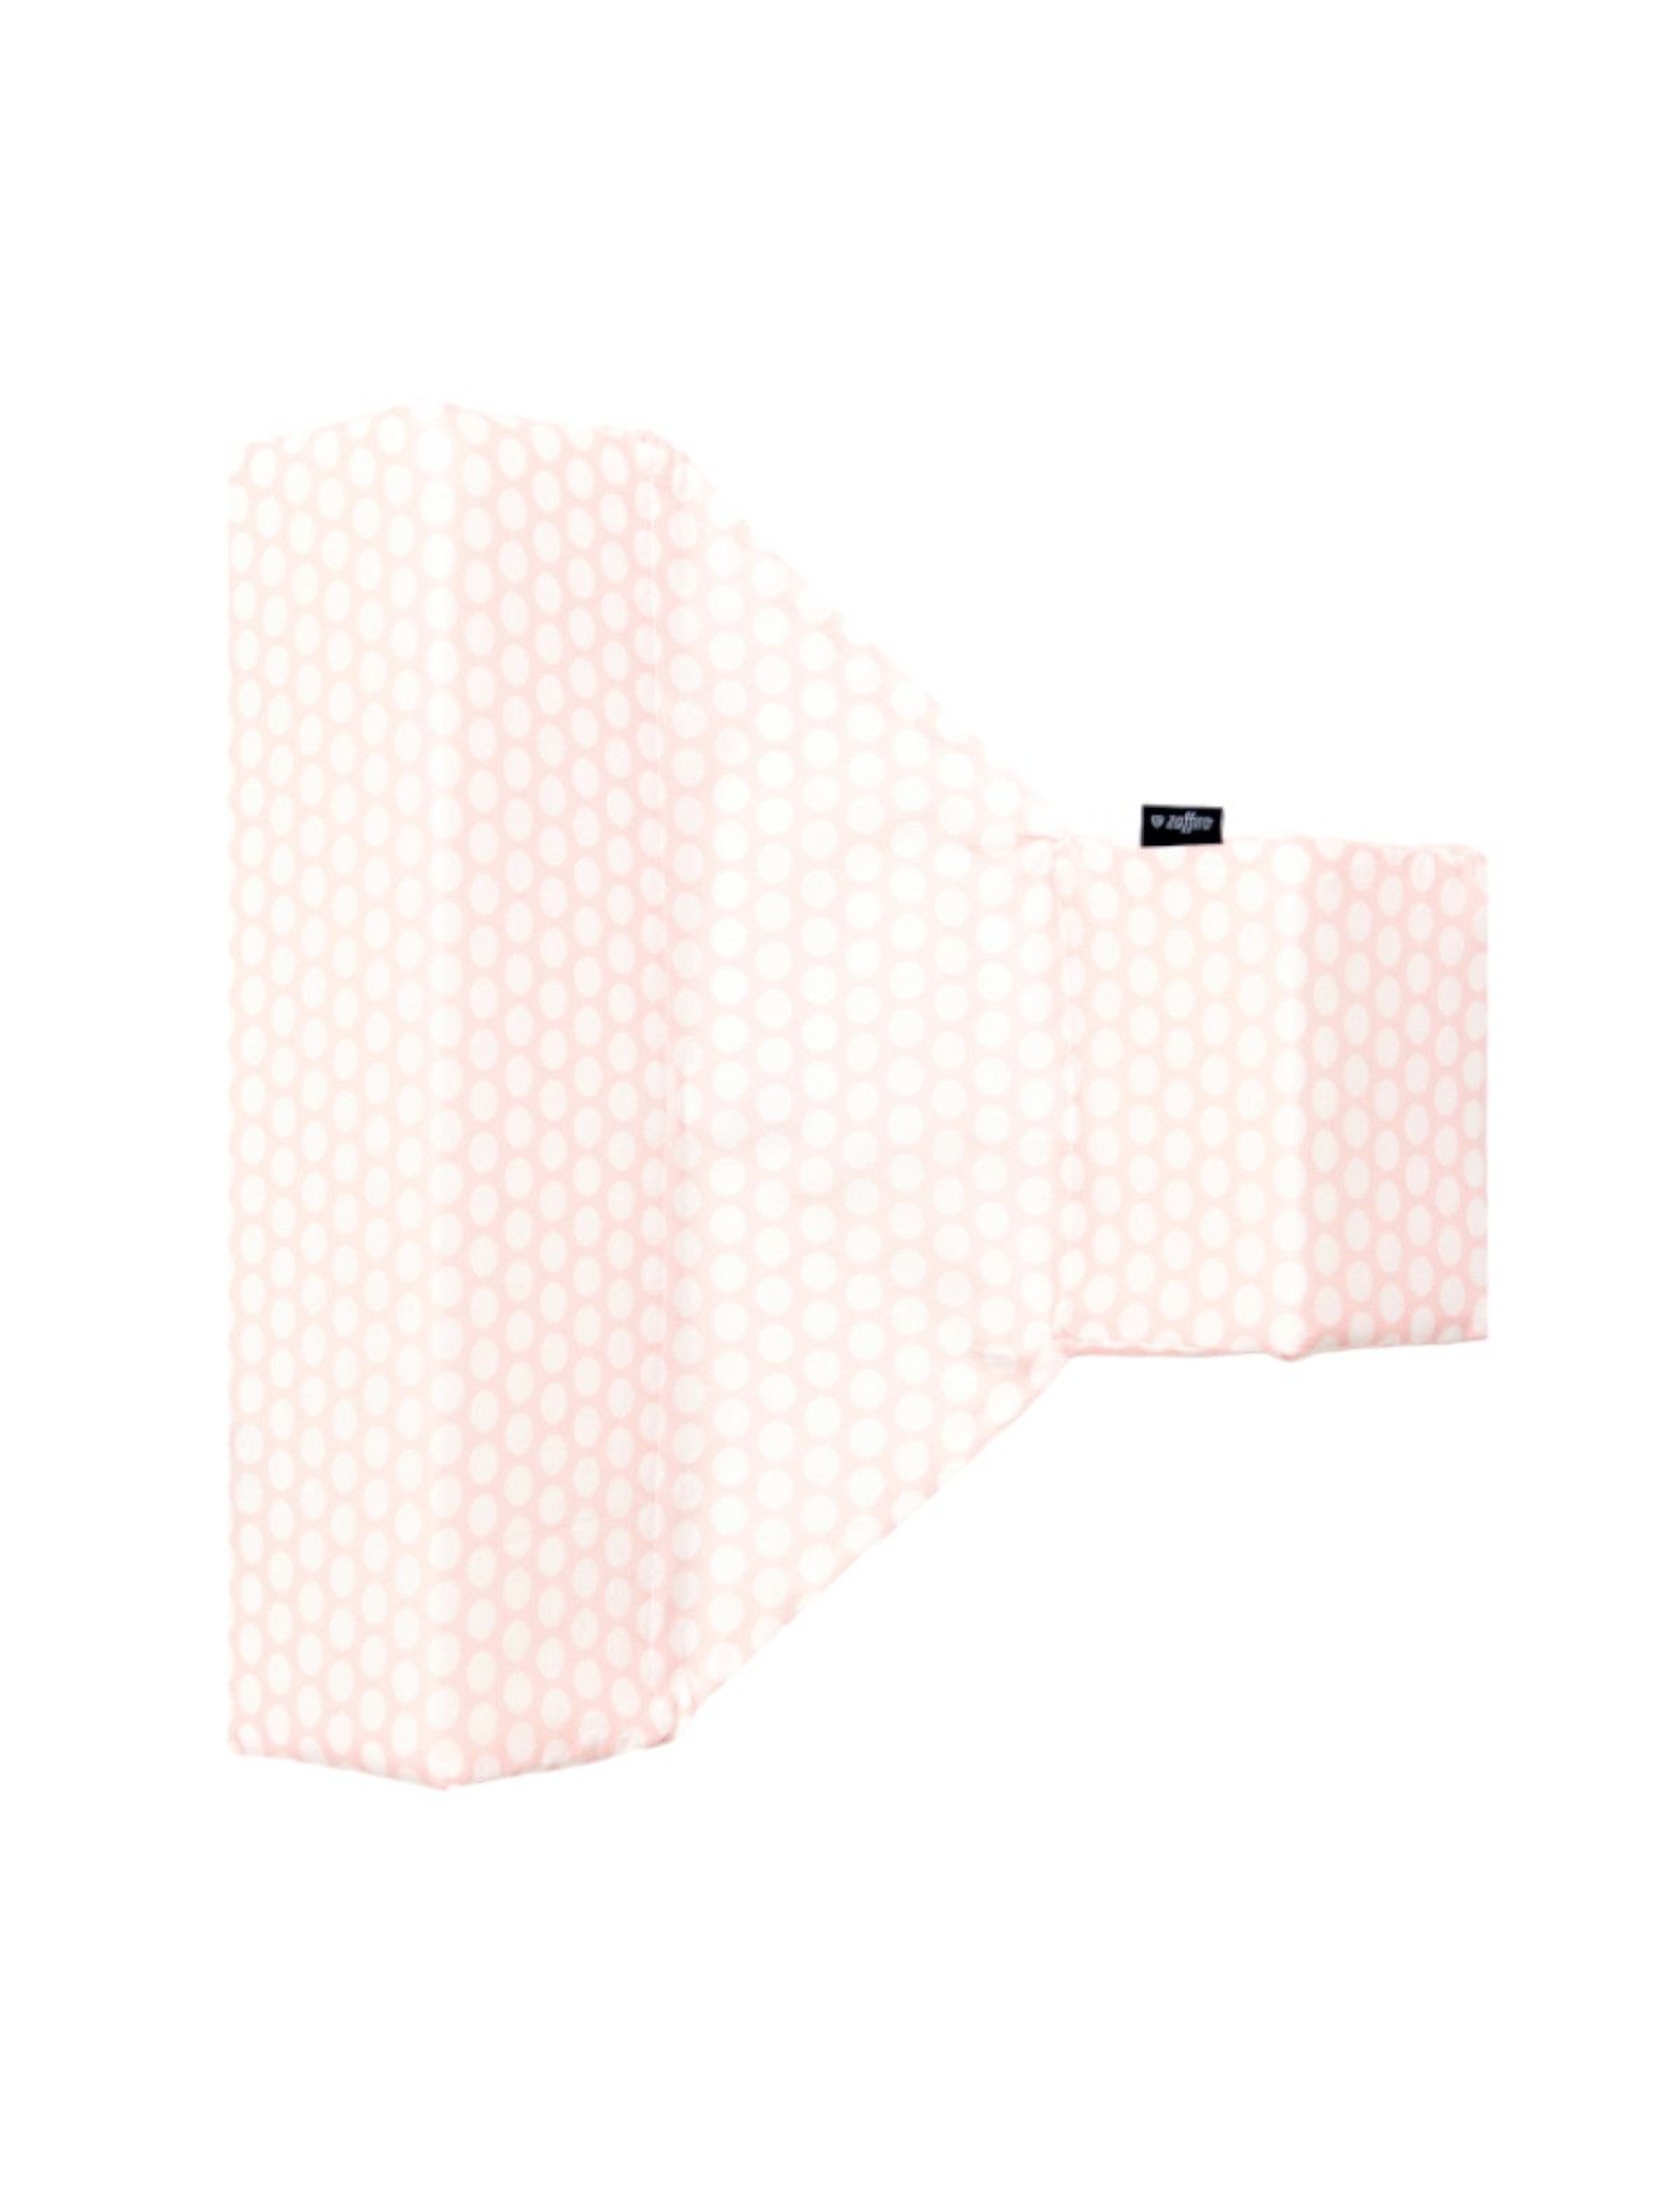 Ogranicznik trójkątny bawełna grochy różowo białe